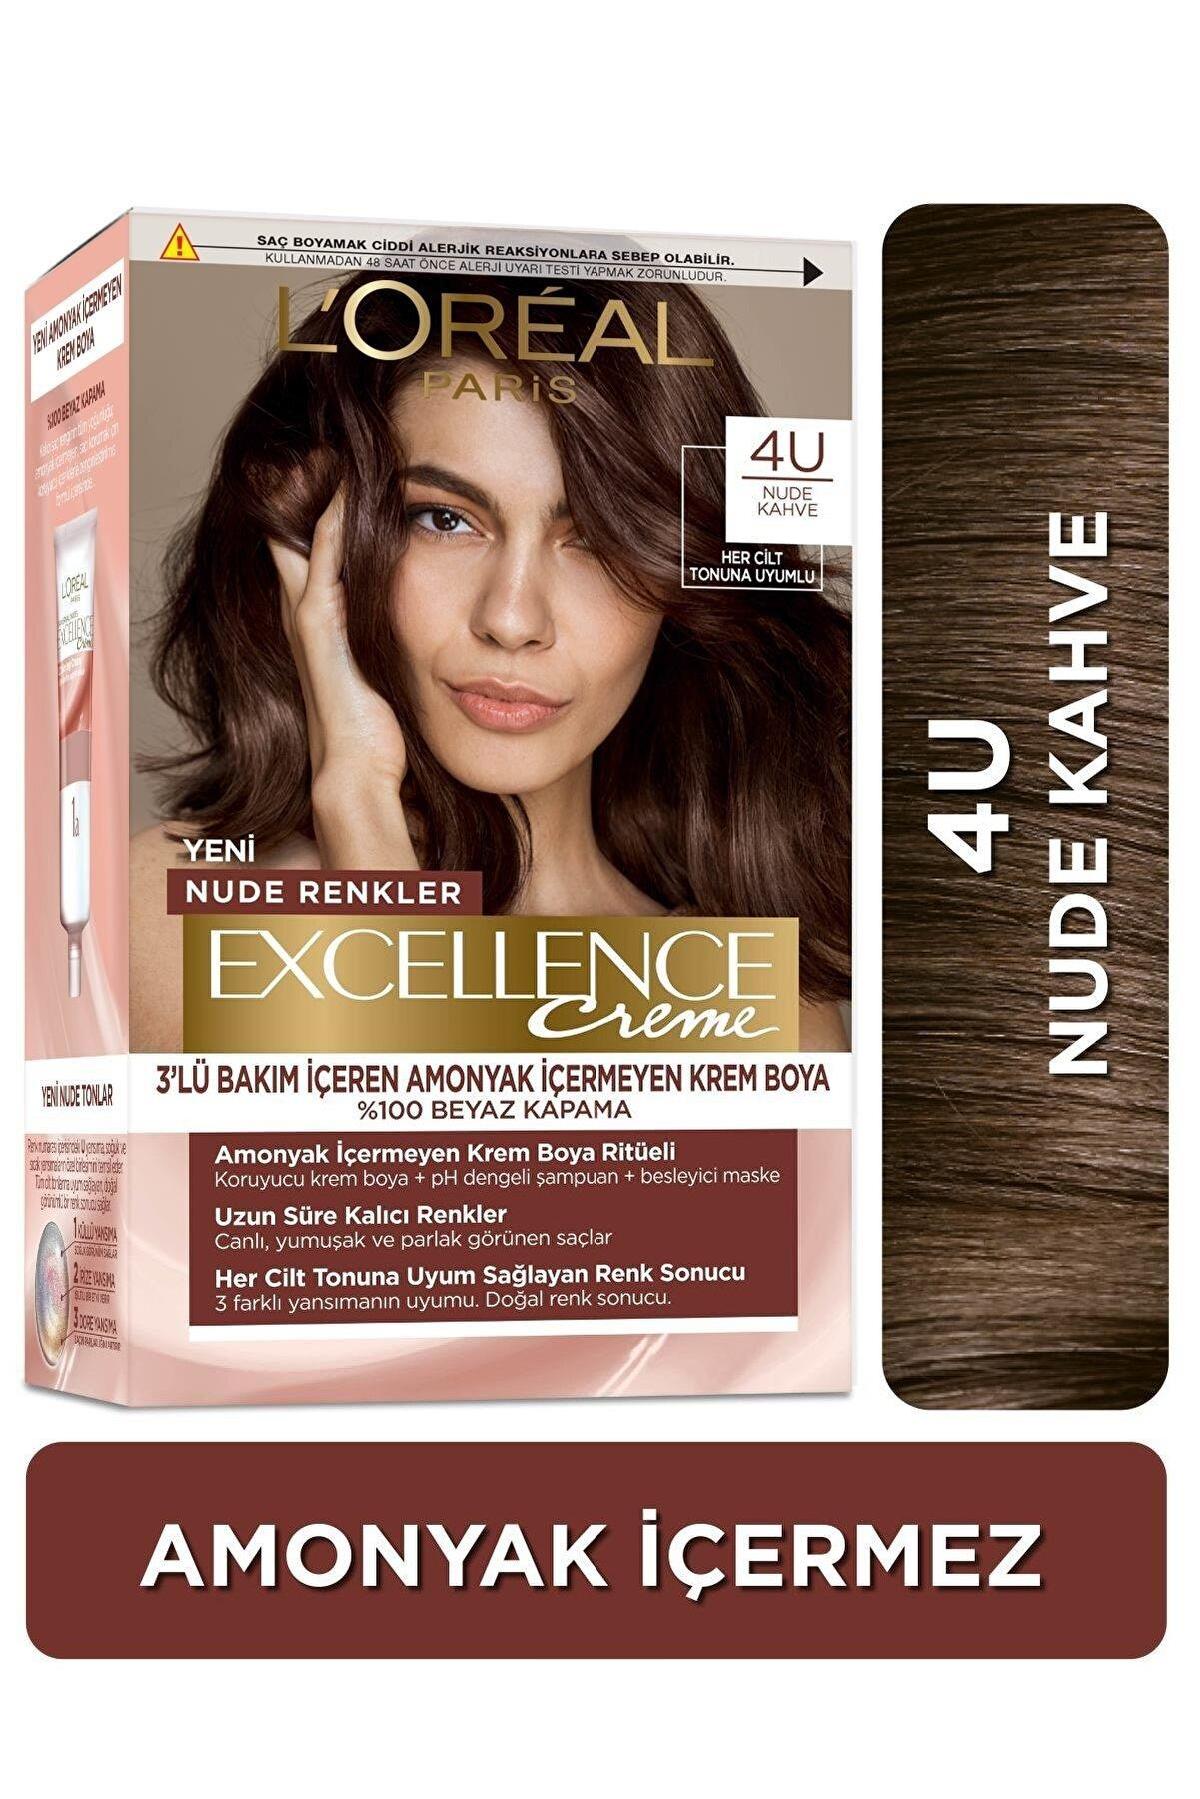 L'Oréal Paris 4U Nude Kahve Amonyaksız Krem Saç Boyası 48 ml